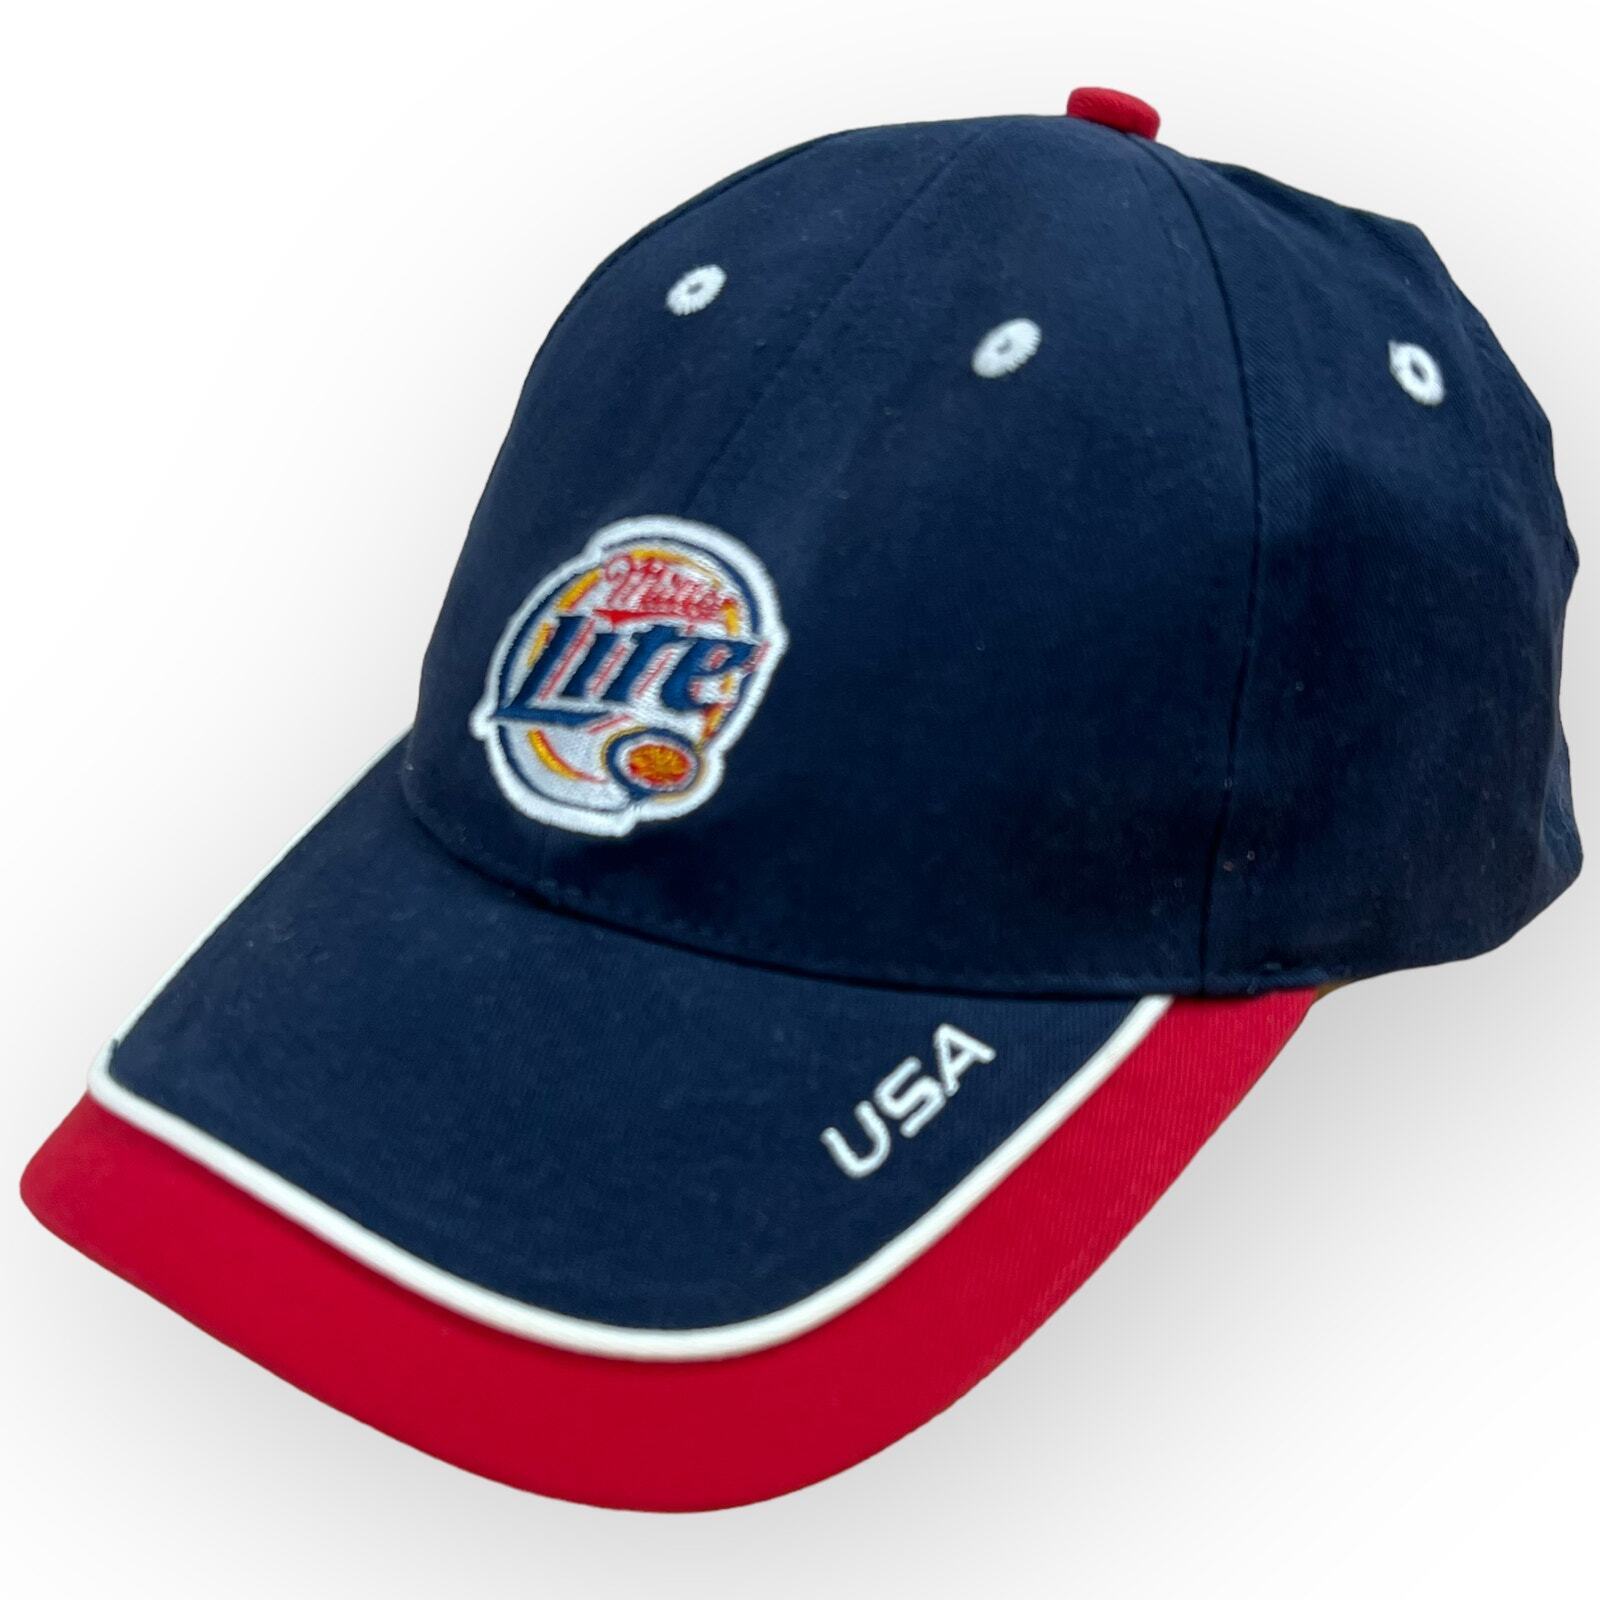 Vtg Acme Miller Lite Baseball Hat Cap Red White Blue Good Call USA Strap Back